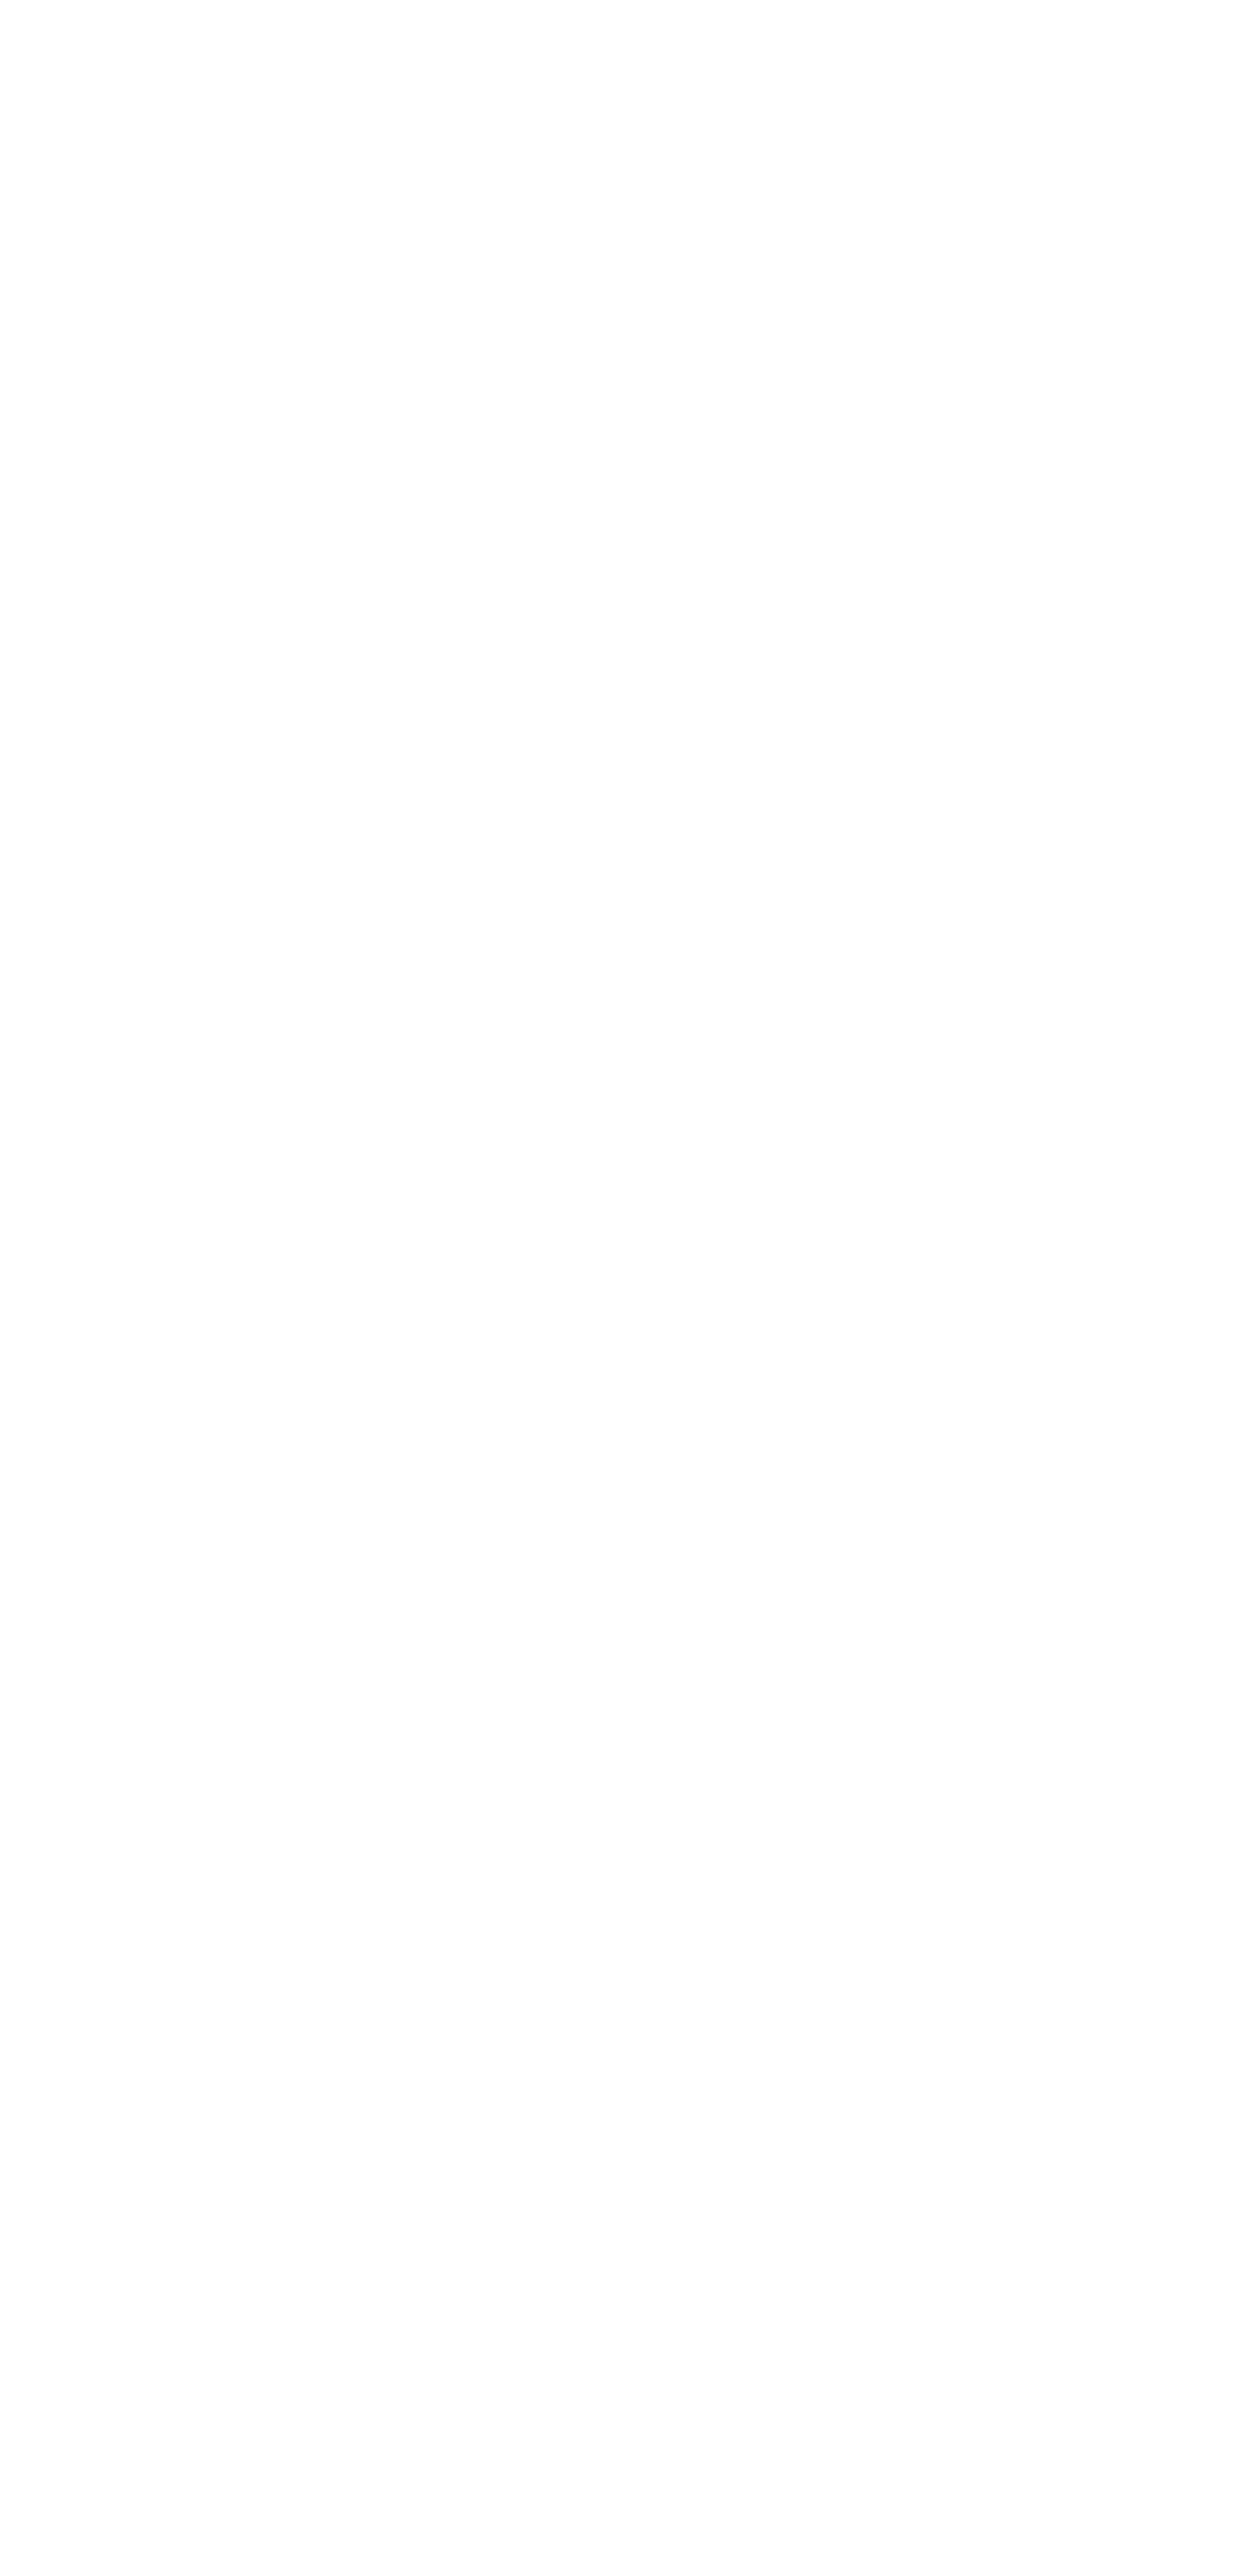 МЕЖКОМНАТНЫЕ ДВЕРИ КВАЛИТЕТ К2 (Toppan Дуб серый продольный)